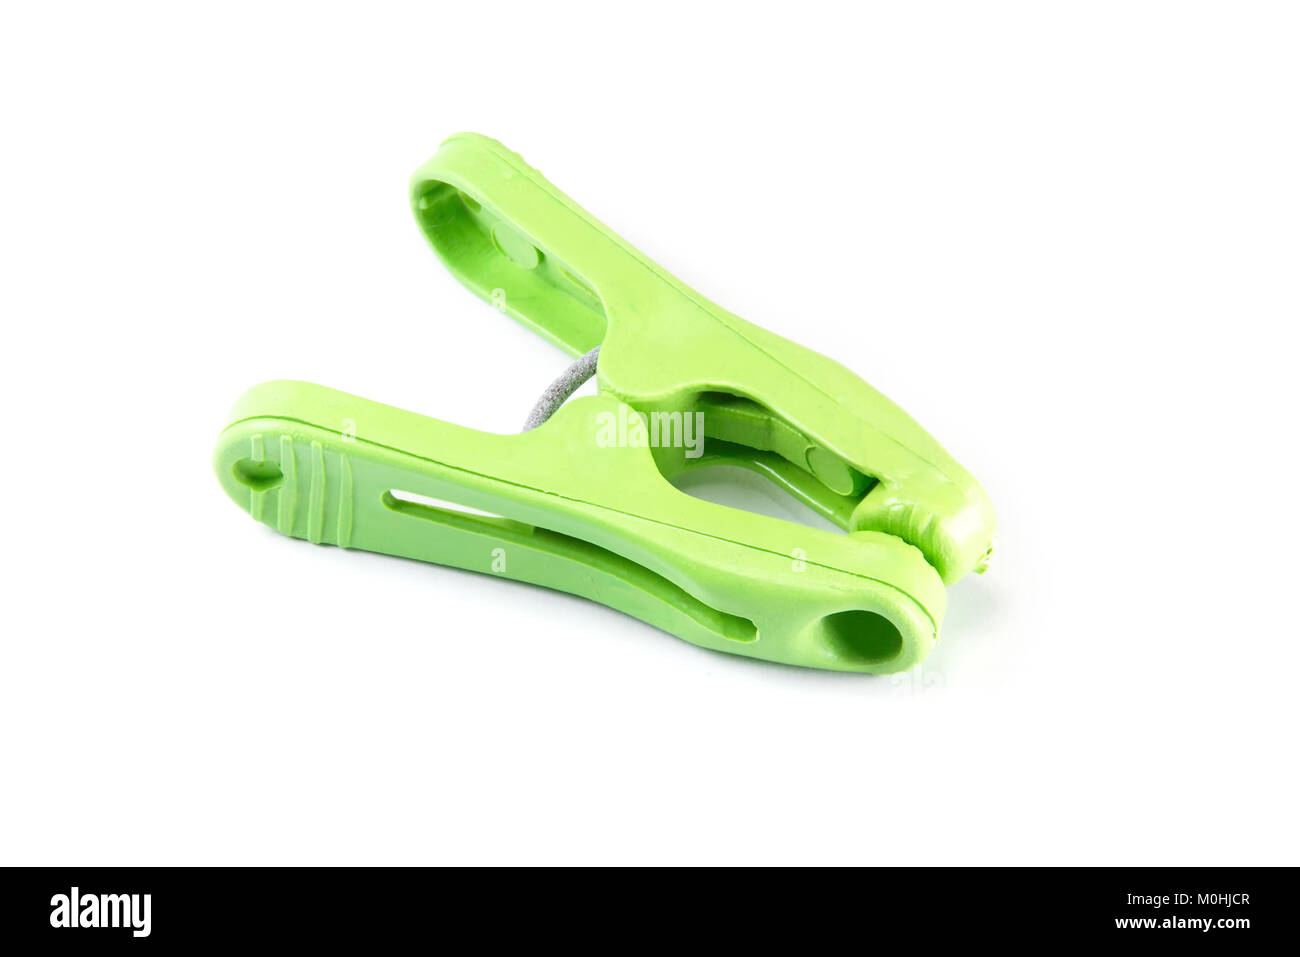 Chiuso verde o clothespeg clothespins isolati su sfondo bianco Foto Stock